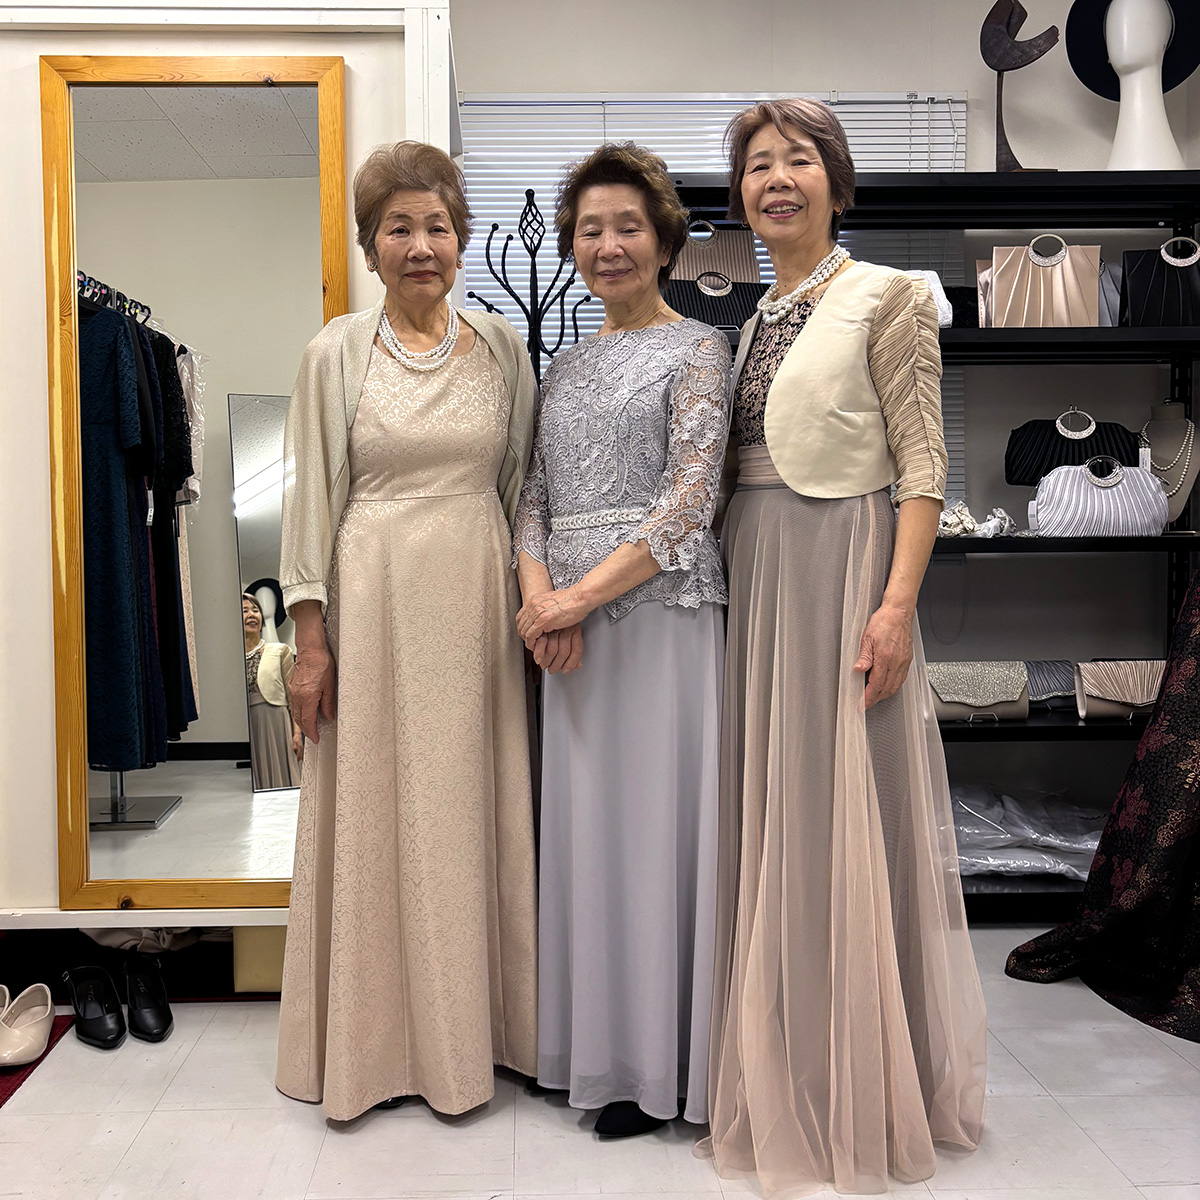 ロングドレスを着用した三姉妹